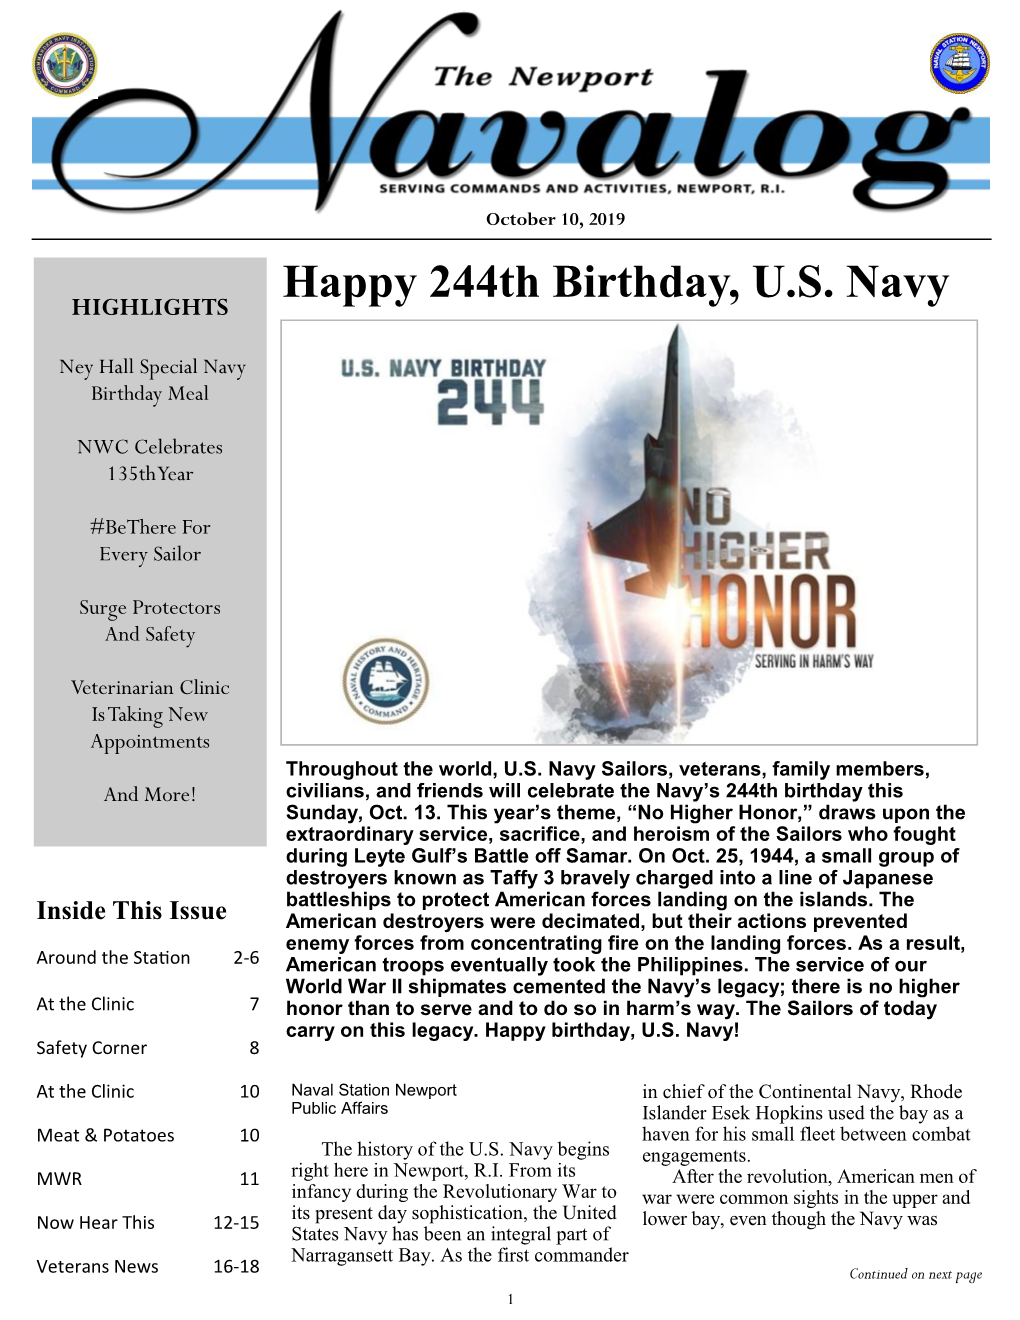 Happy 244Th Birthday, U.S. Navy HIGHLIGHTS